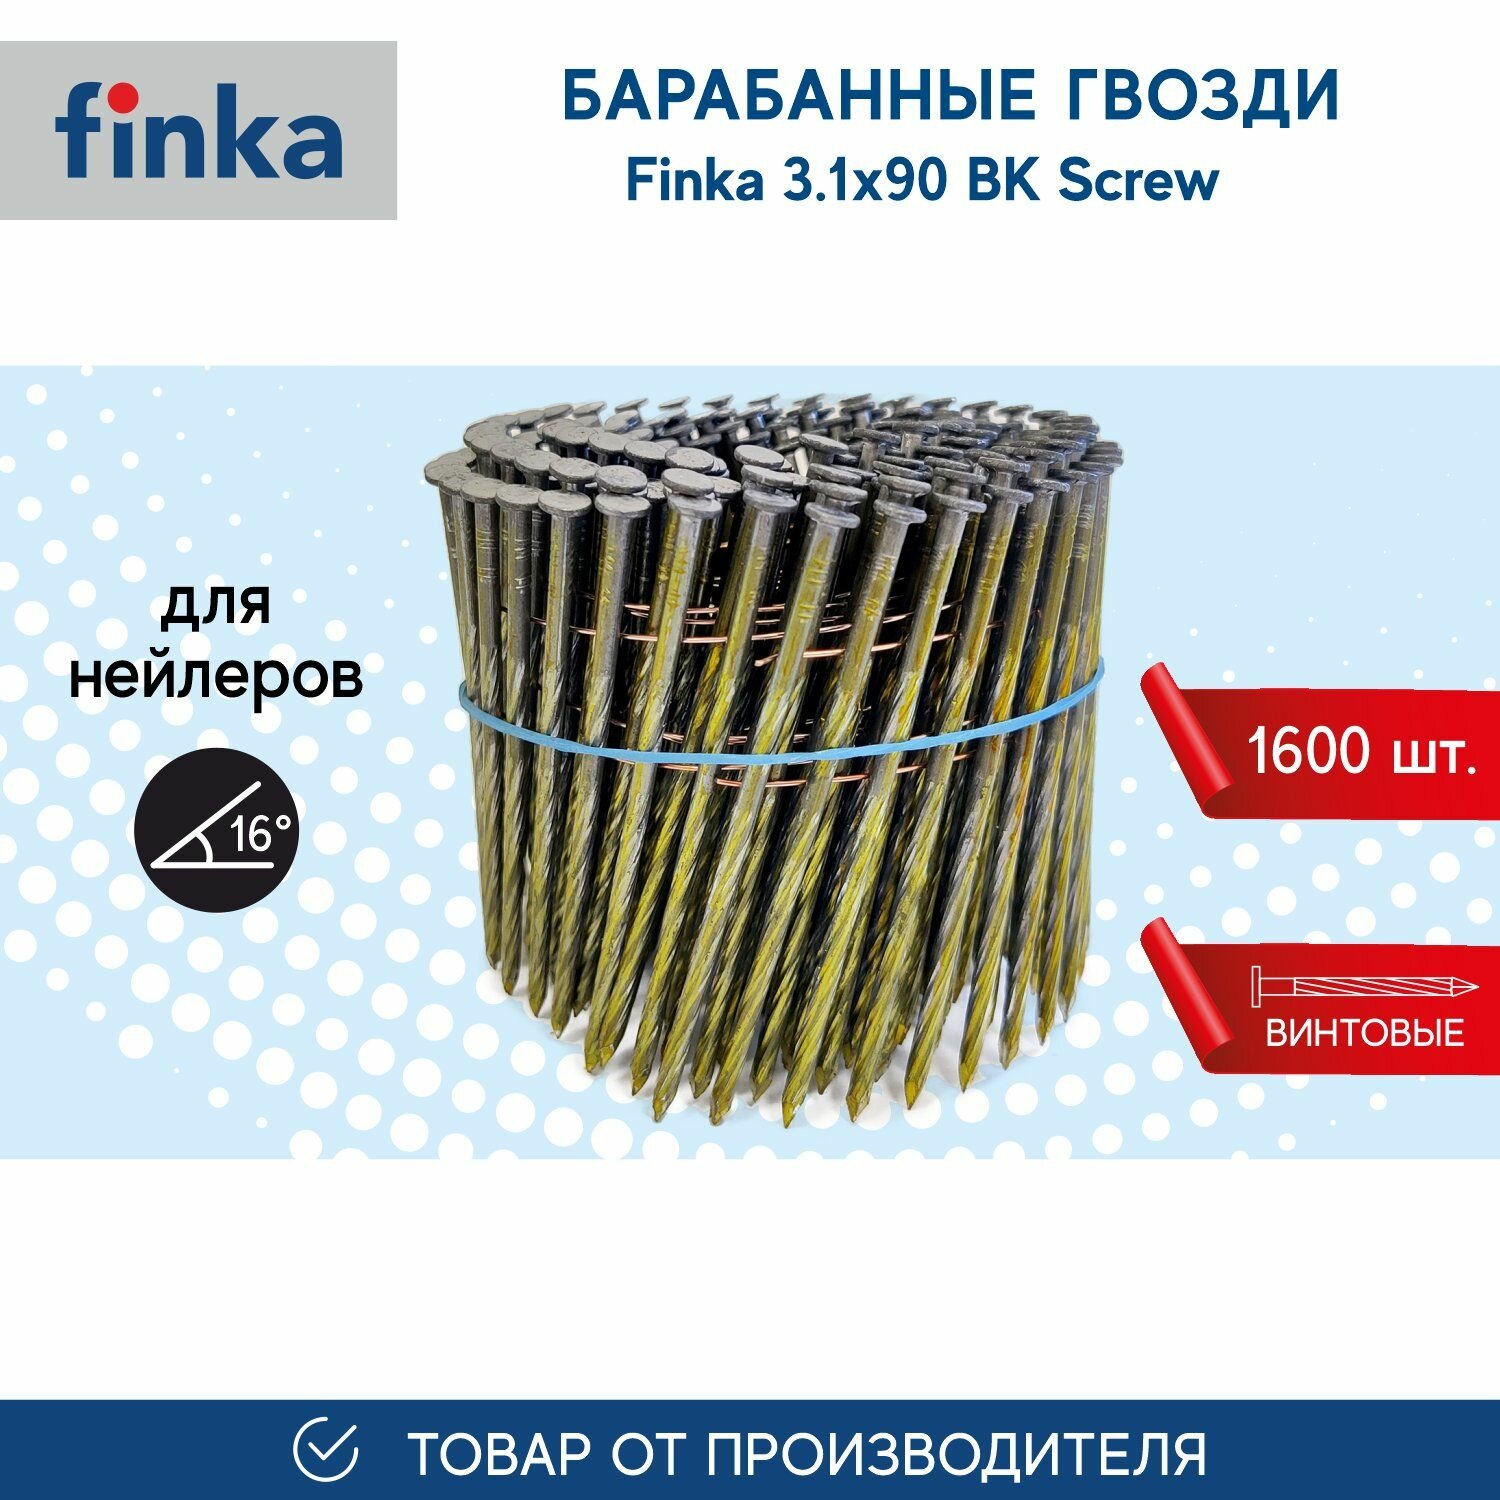 Барабанные гвозди FINKA 3.1х90 BK Screw (1600 шт.) для нейлеров и пневмоинструмента, винтовой, компактная упаковка - фотография № 1